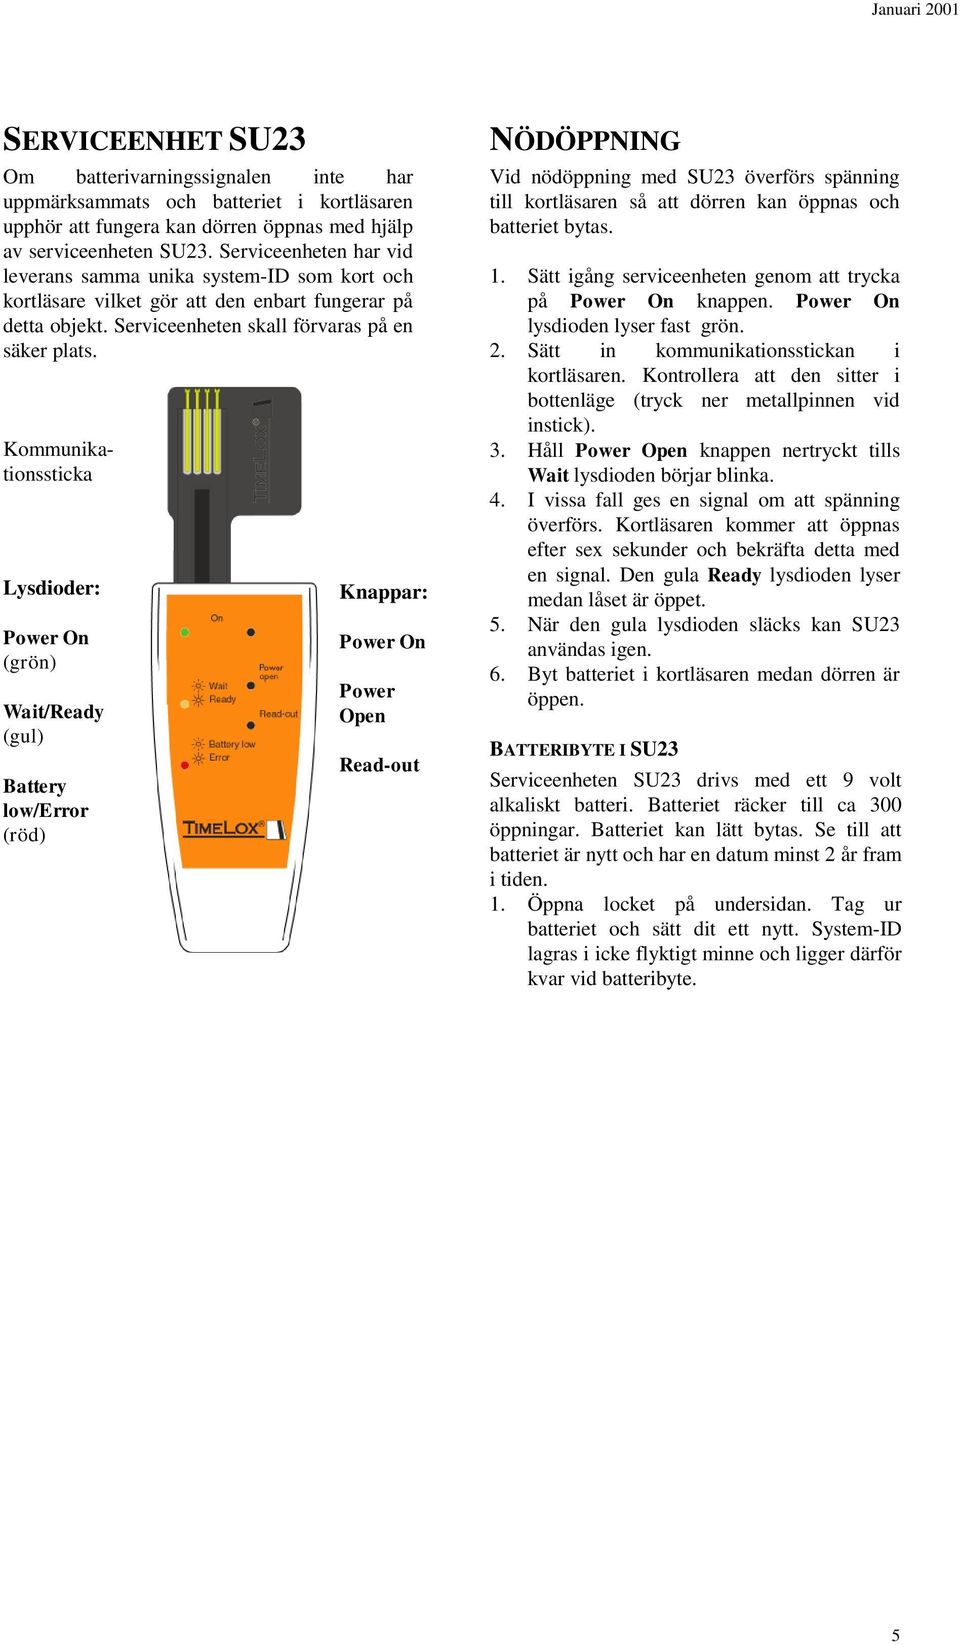 Kommunikationssticka Lysdioder: Power On (grön) Wait/Ready (gul) Battery low/error (röd) Knappar: Power On Power Open Read-out NÖDÖPPNING Vid nödöppning med SU23 överförs spänning till kortläsaren så